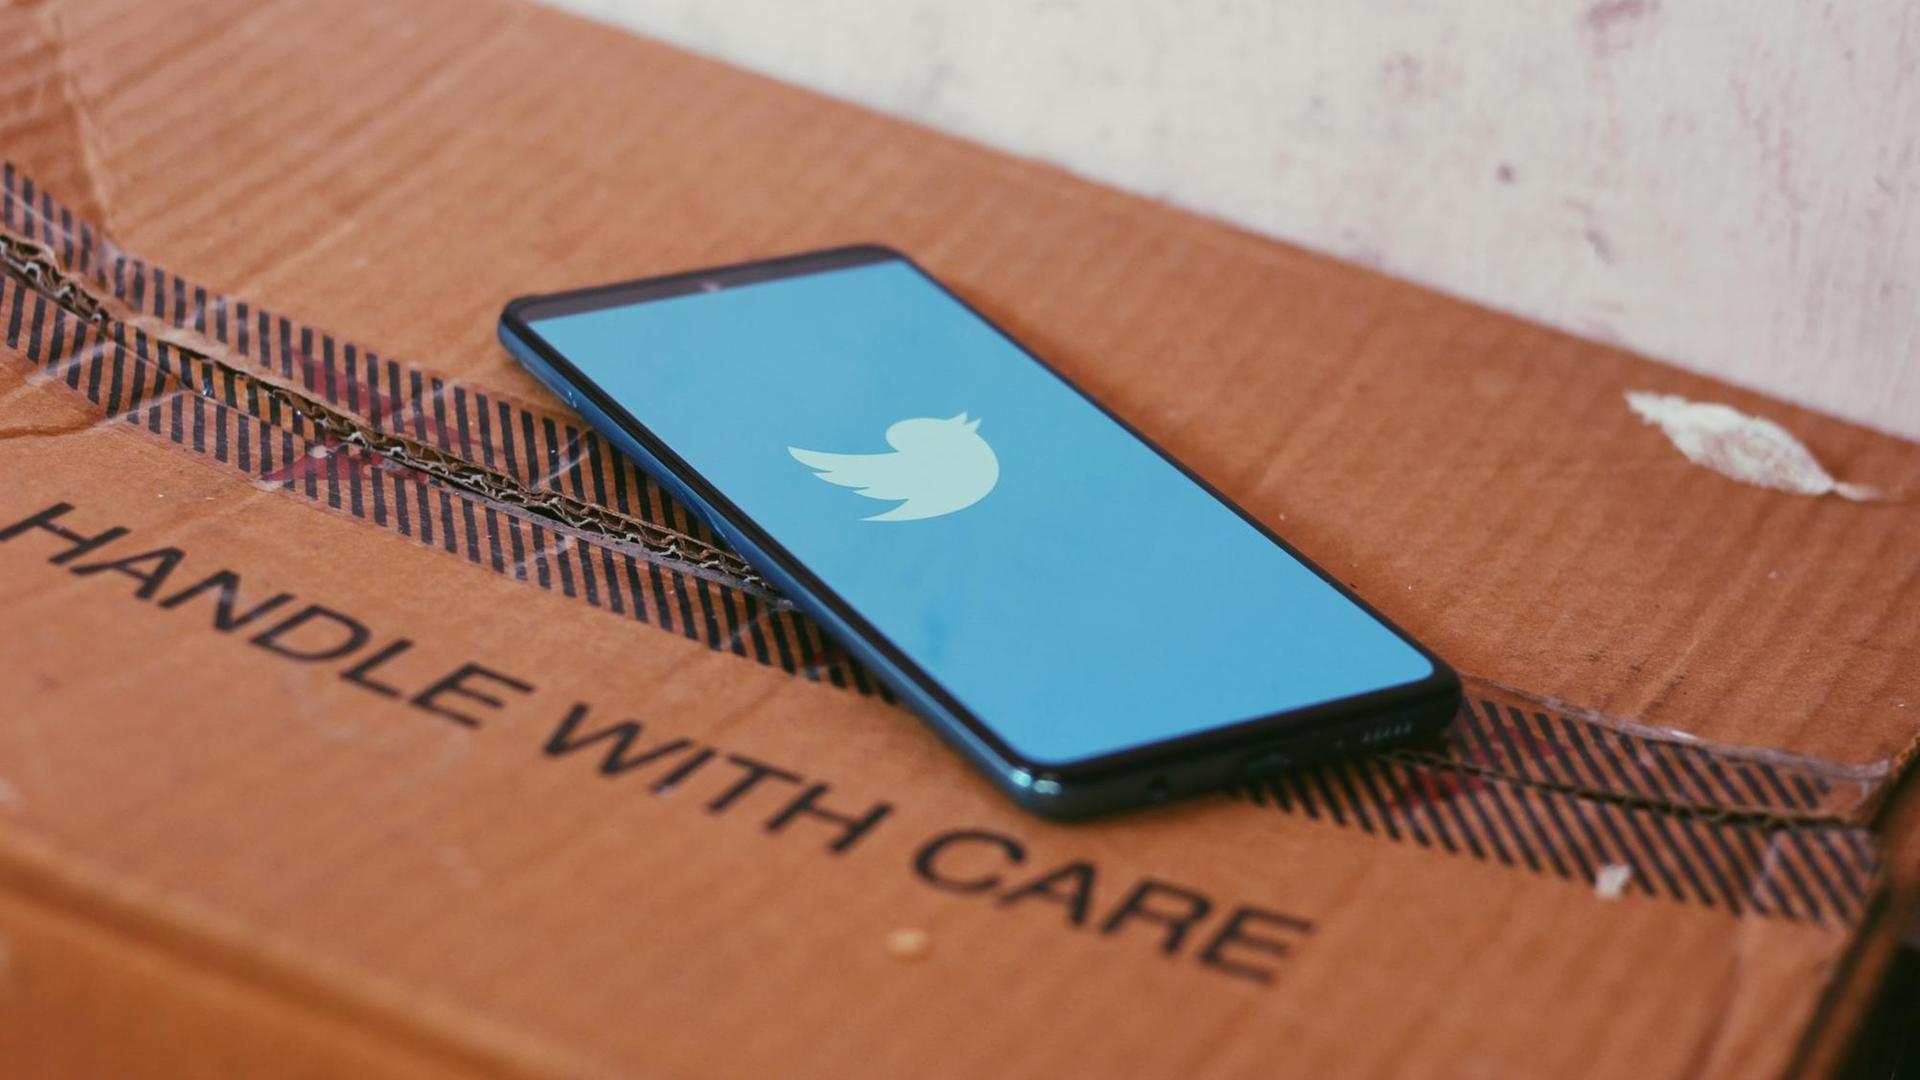 Ein Smartphone mit dem Twitterlogo liegt auf einem Paket mit der Aufschrift "HANDLE WITH CARE".